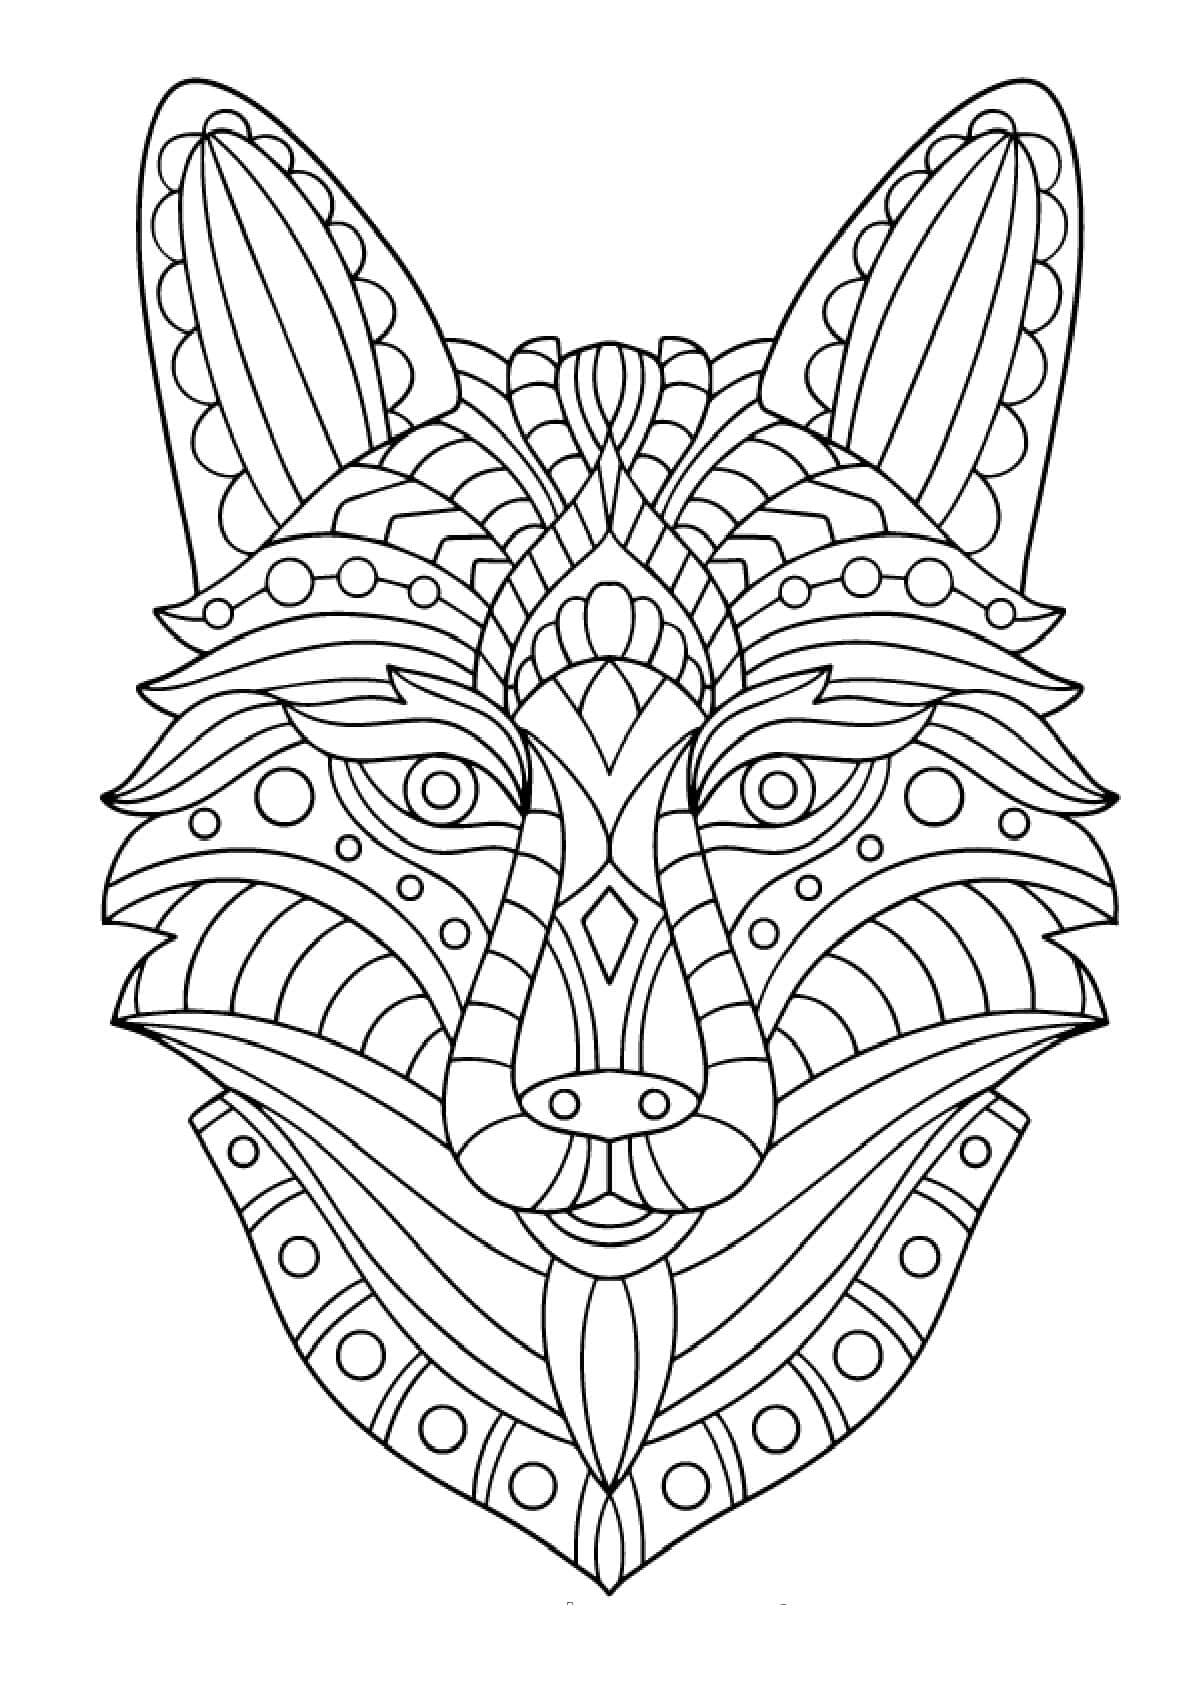 Mandala de Loup Gratuit coloring page